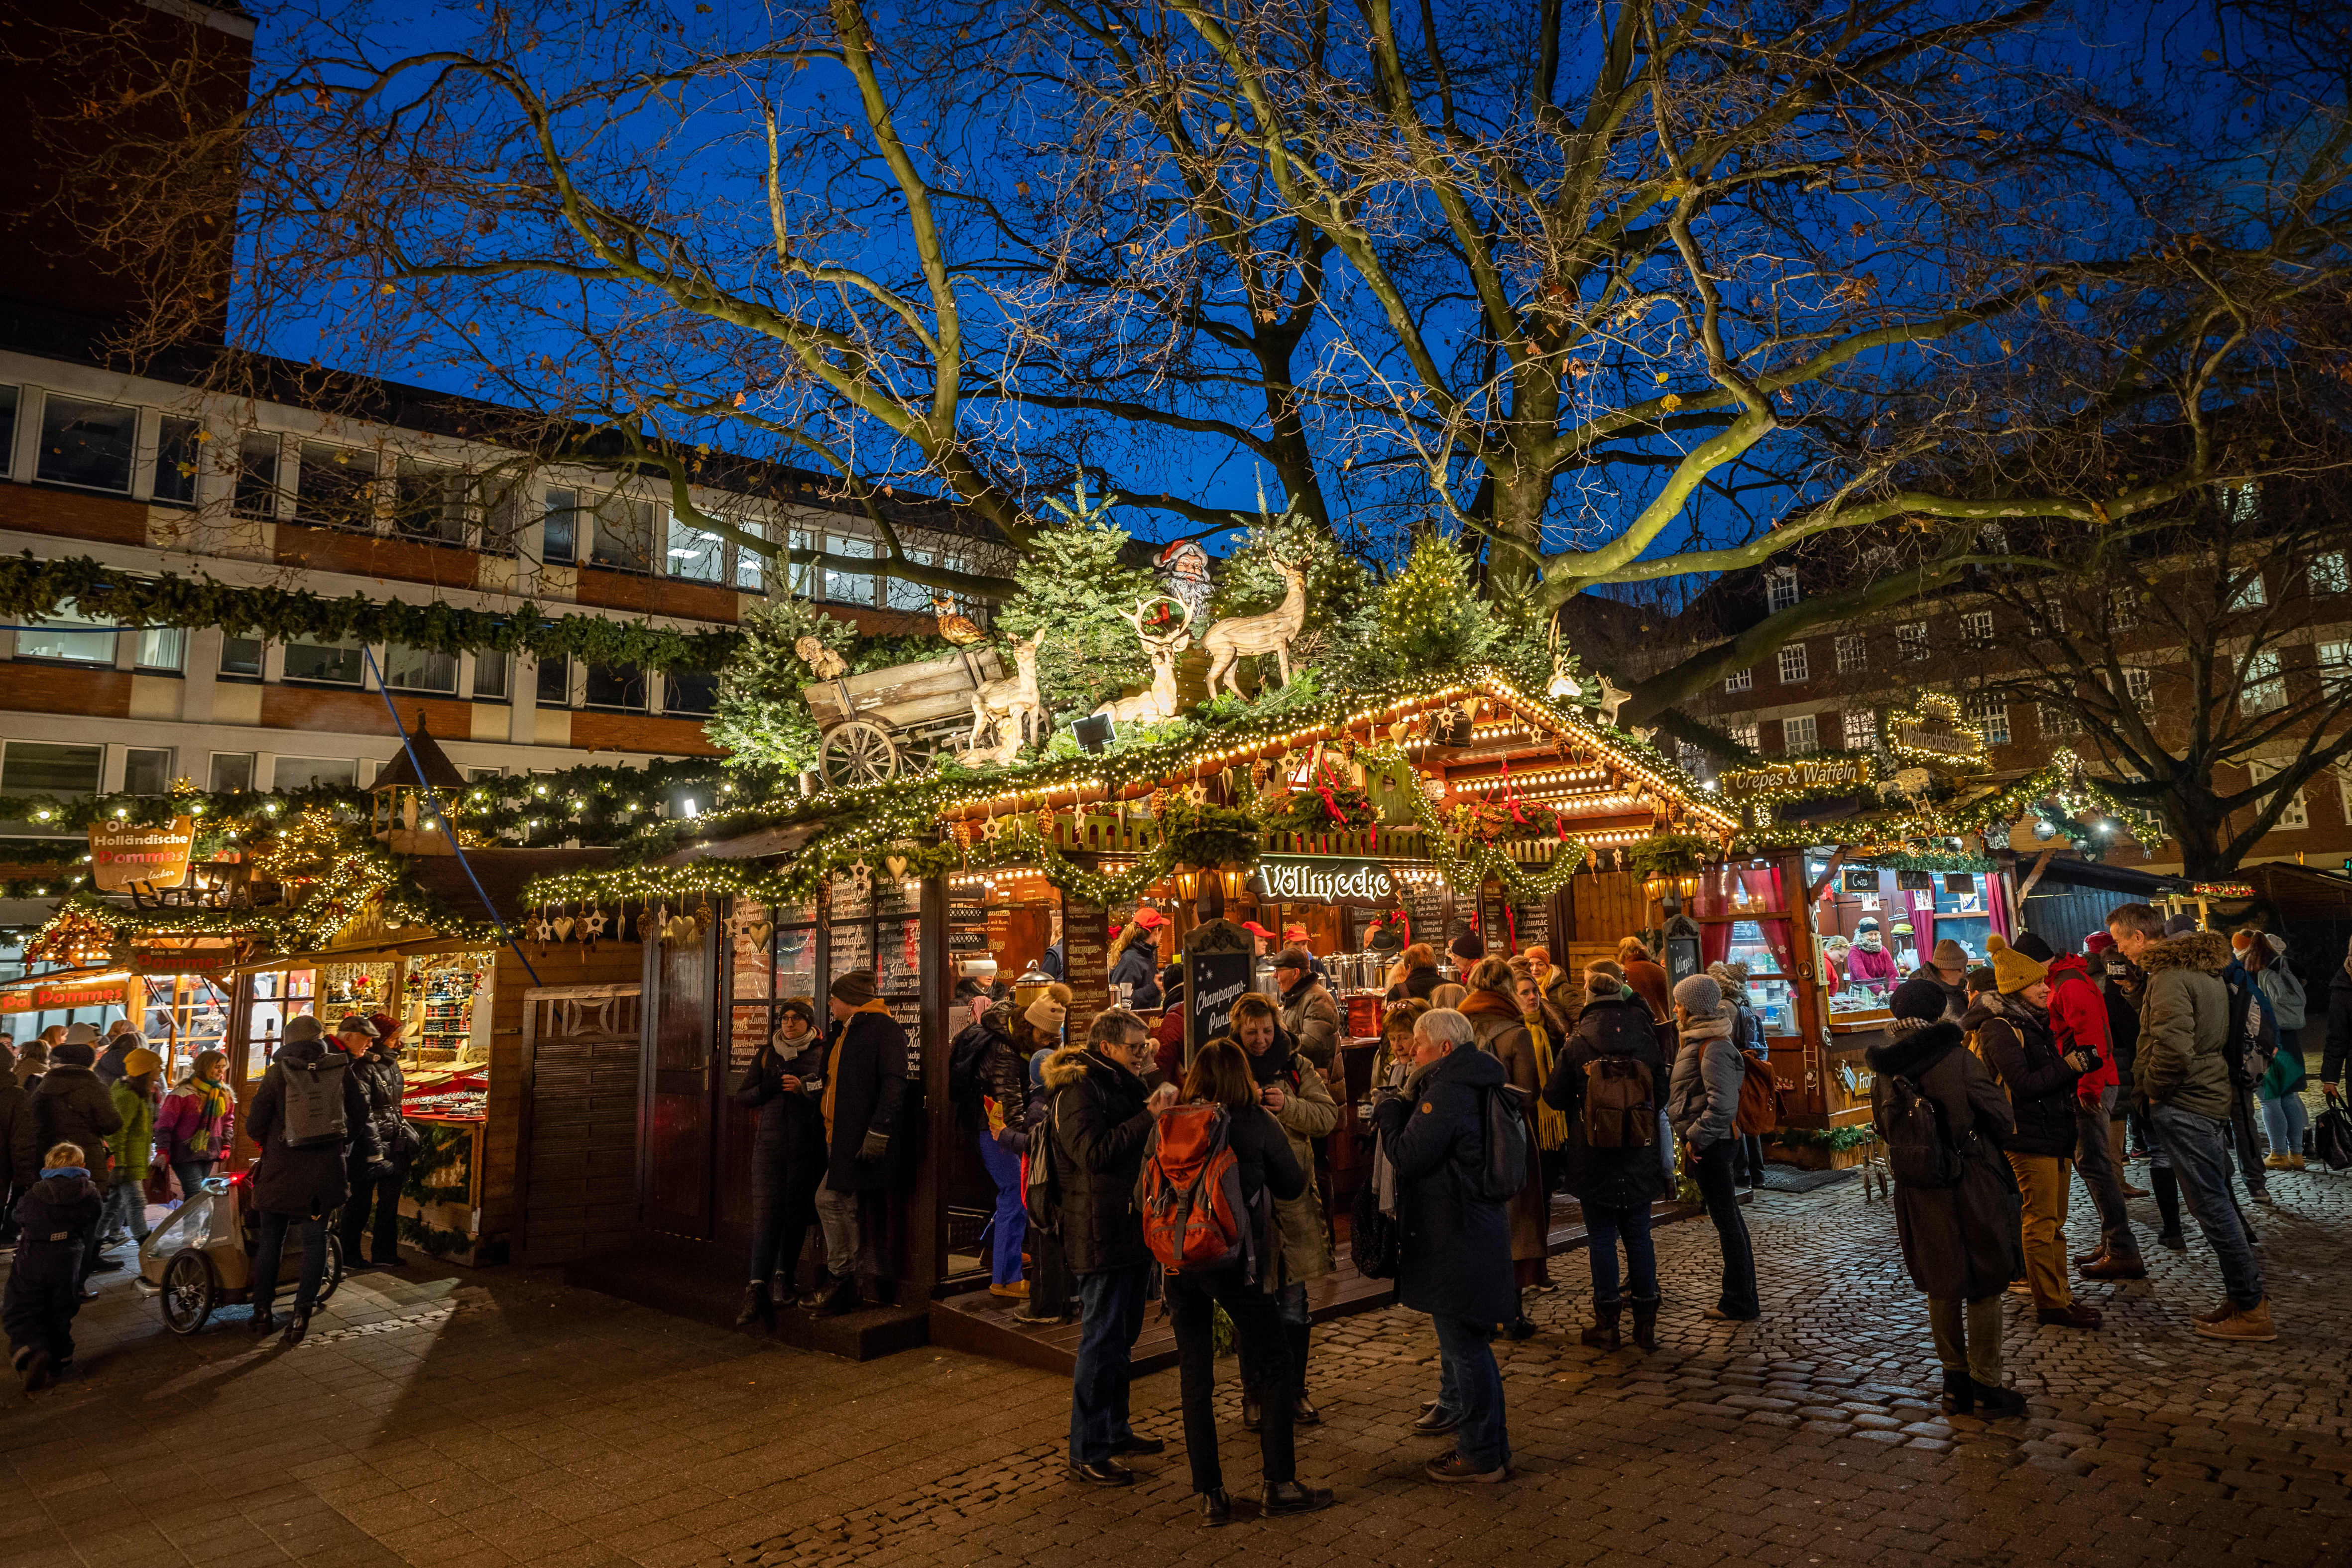 Weihnachtsmarkt im Dunkeln, beleuchtete Bäume und Stände mit Menschen